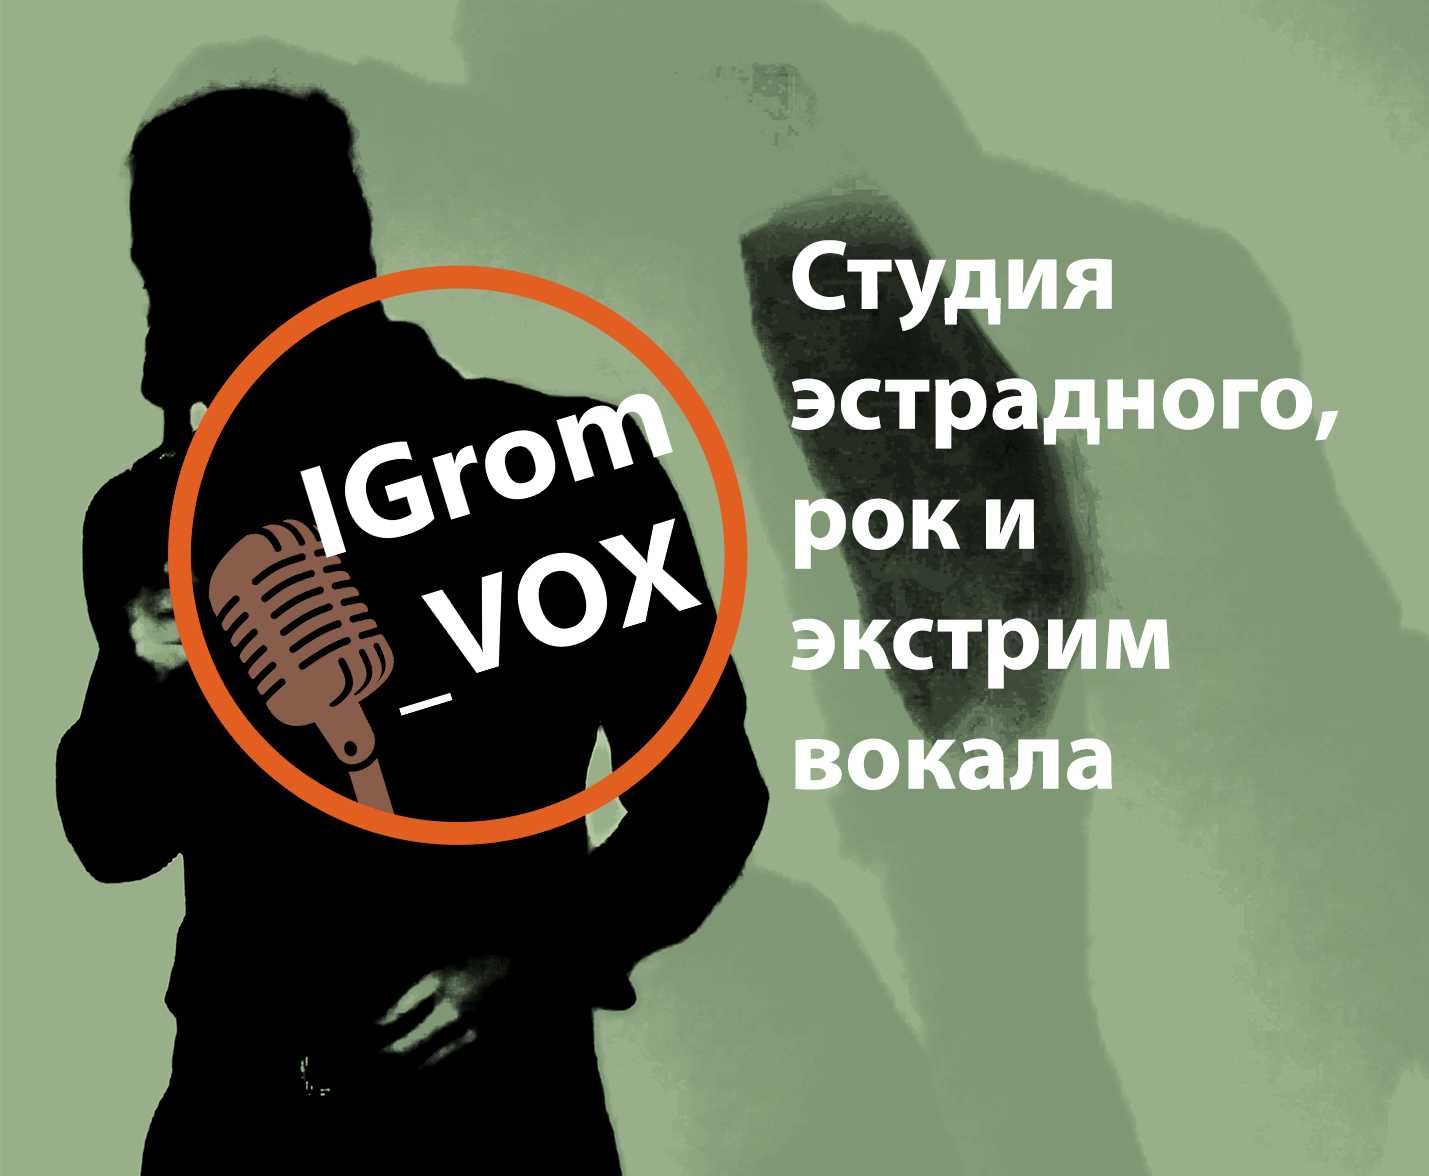 Обучение вокалу, эстрадный, рок и экстрим - вокал, студия IGrom_VOX